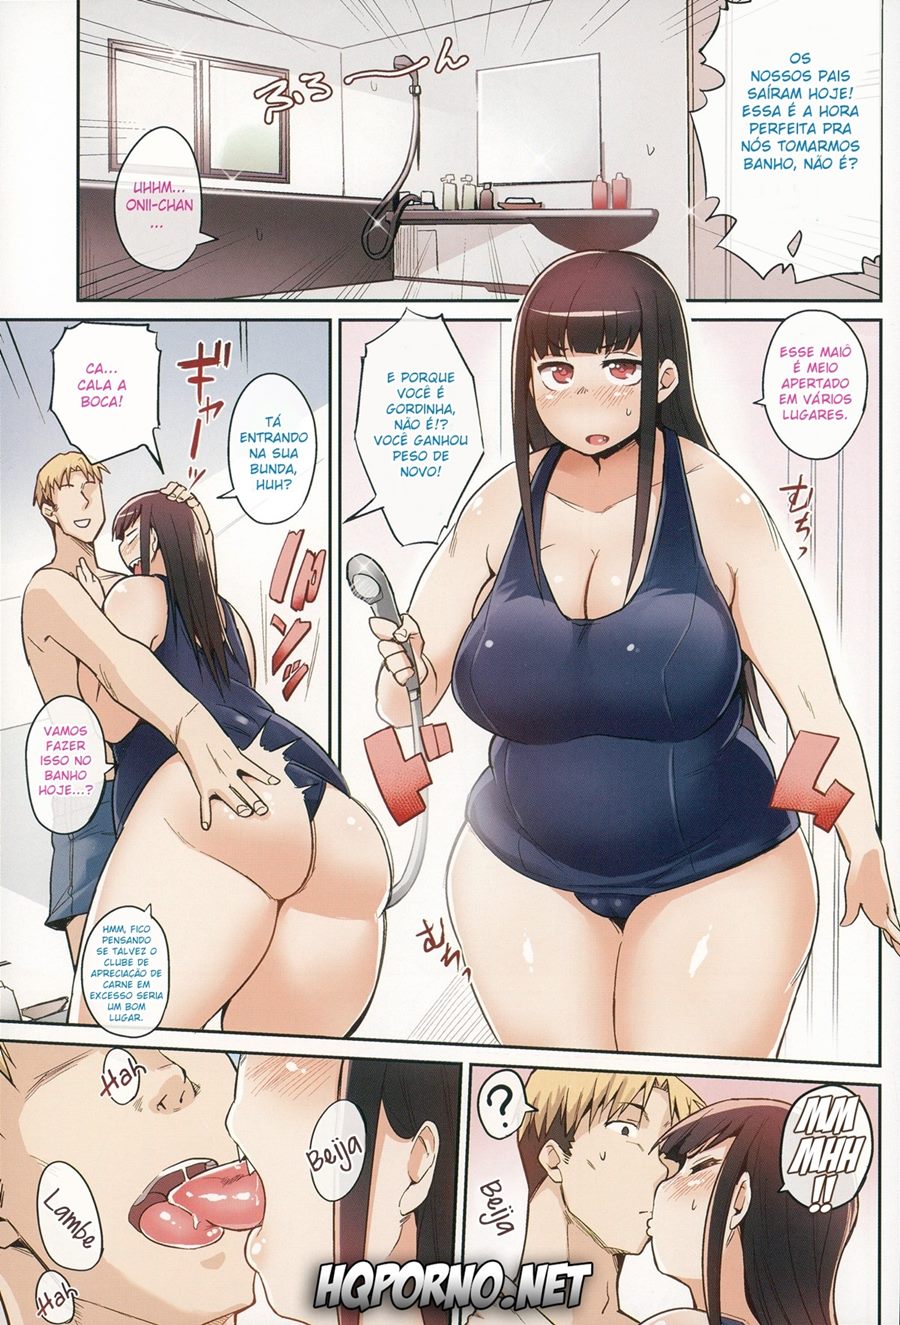 Sexo Com Gorda Hentai - Hentai e Quadrinhos Eroticos - Quadrinhos De Sexo foto